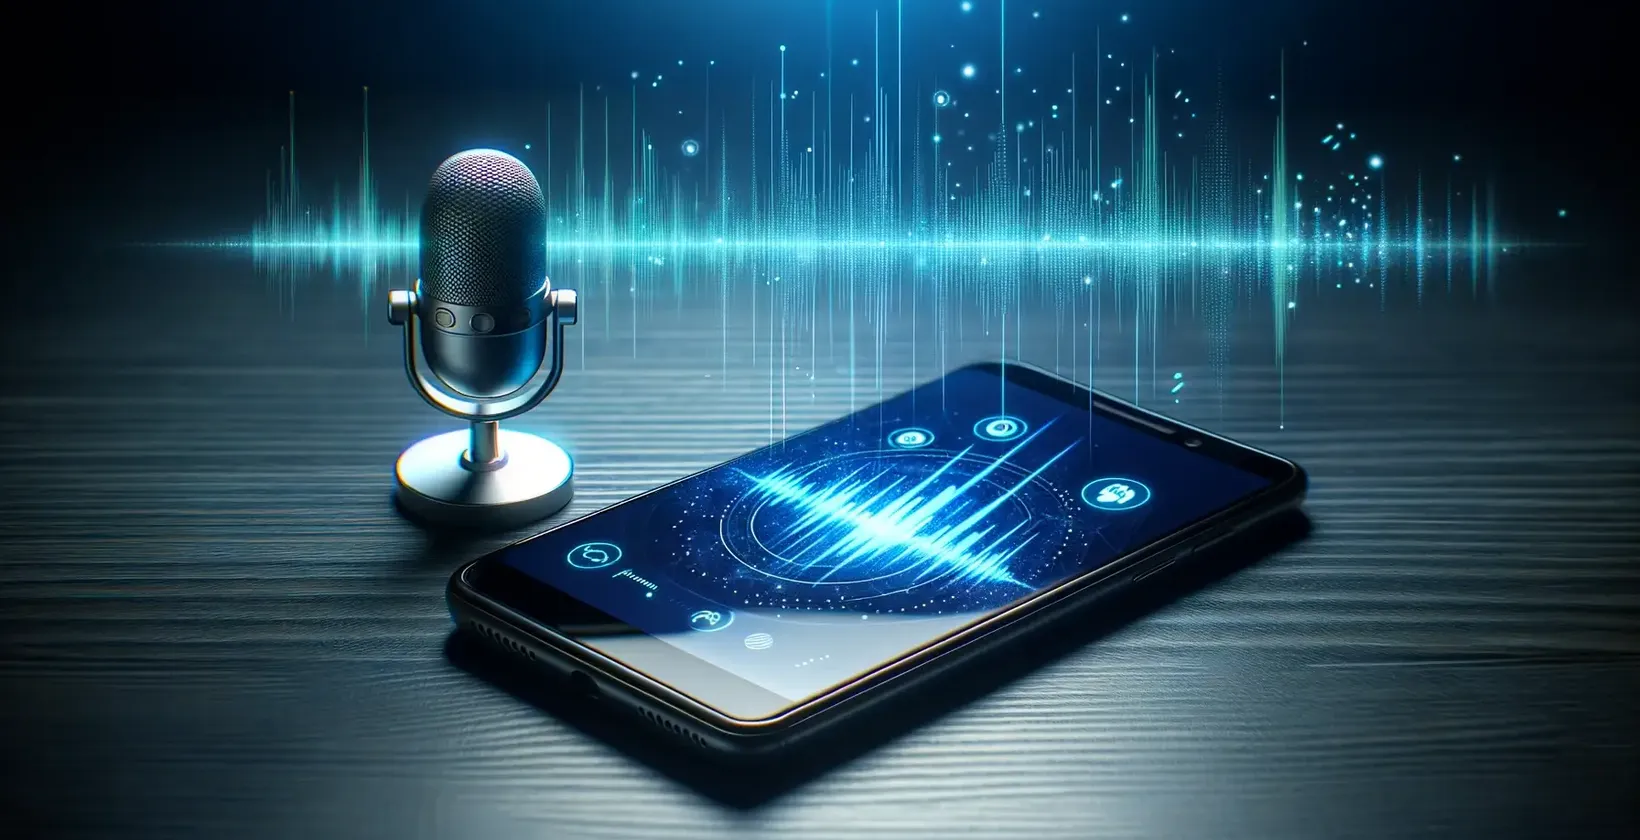 Moderní mikrofon stojí vedle chytrého telefonu a zobrazuje živou grafiku zvukových vln.